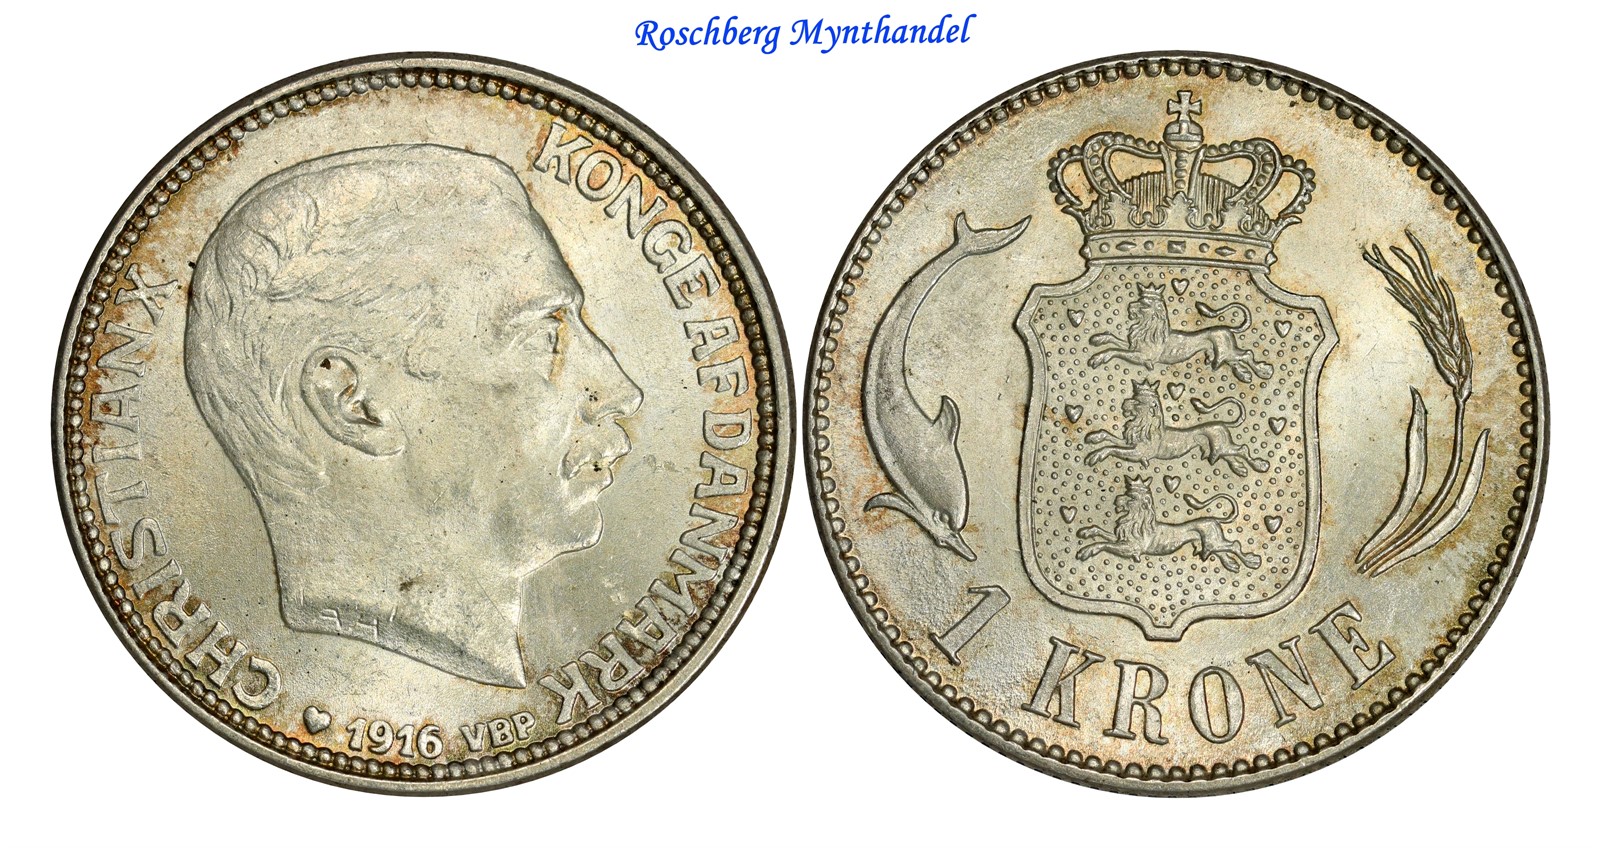 DENMARK. 1 Krone 1916 UNC